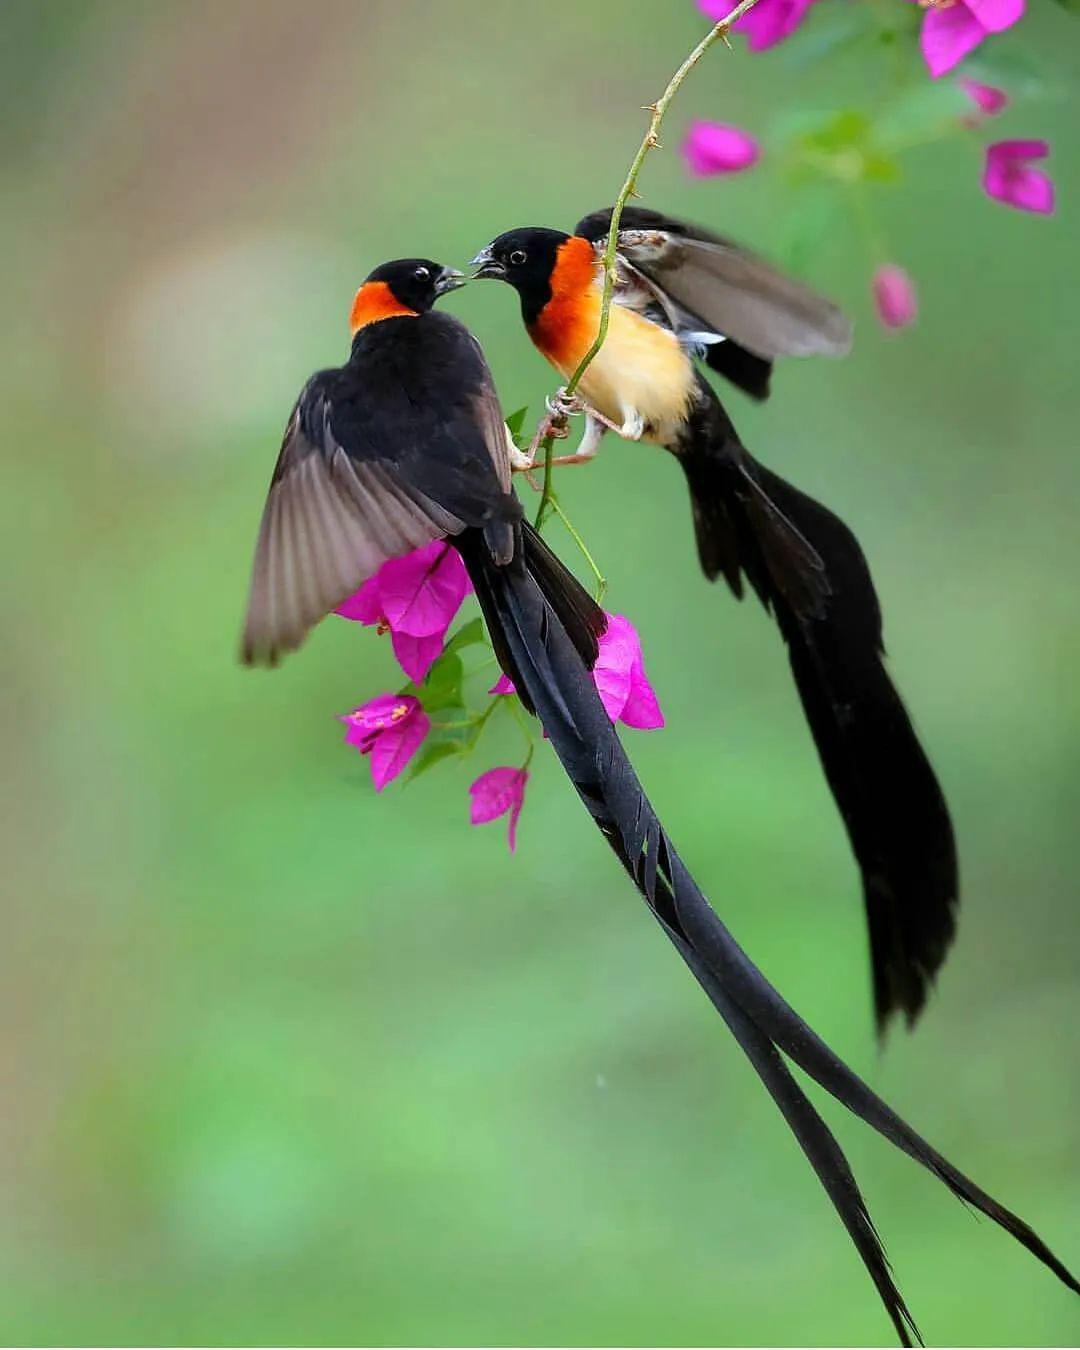 花与鸟,也许这不会是唯一一次相遇,但愿是此生最美的一次邂逅.